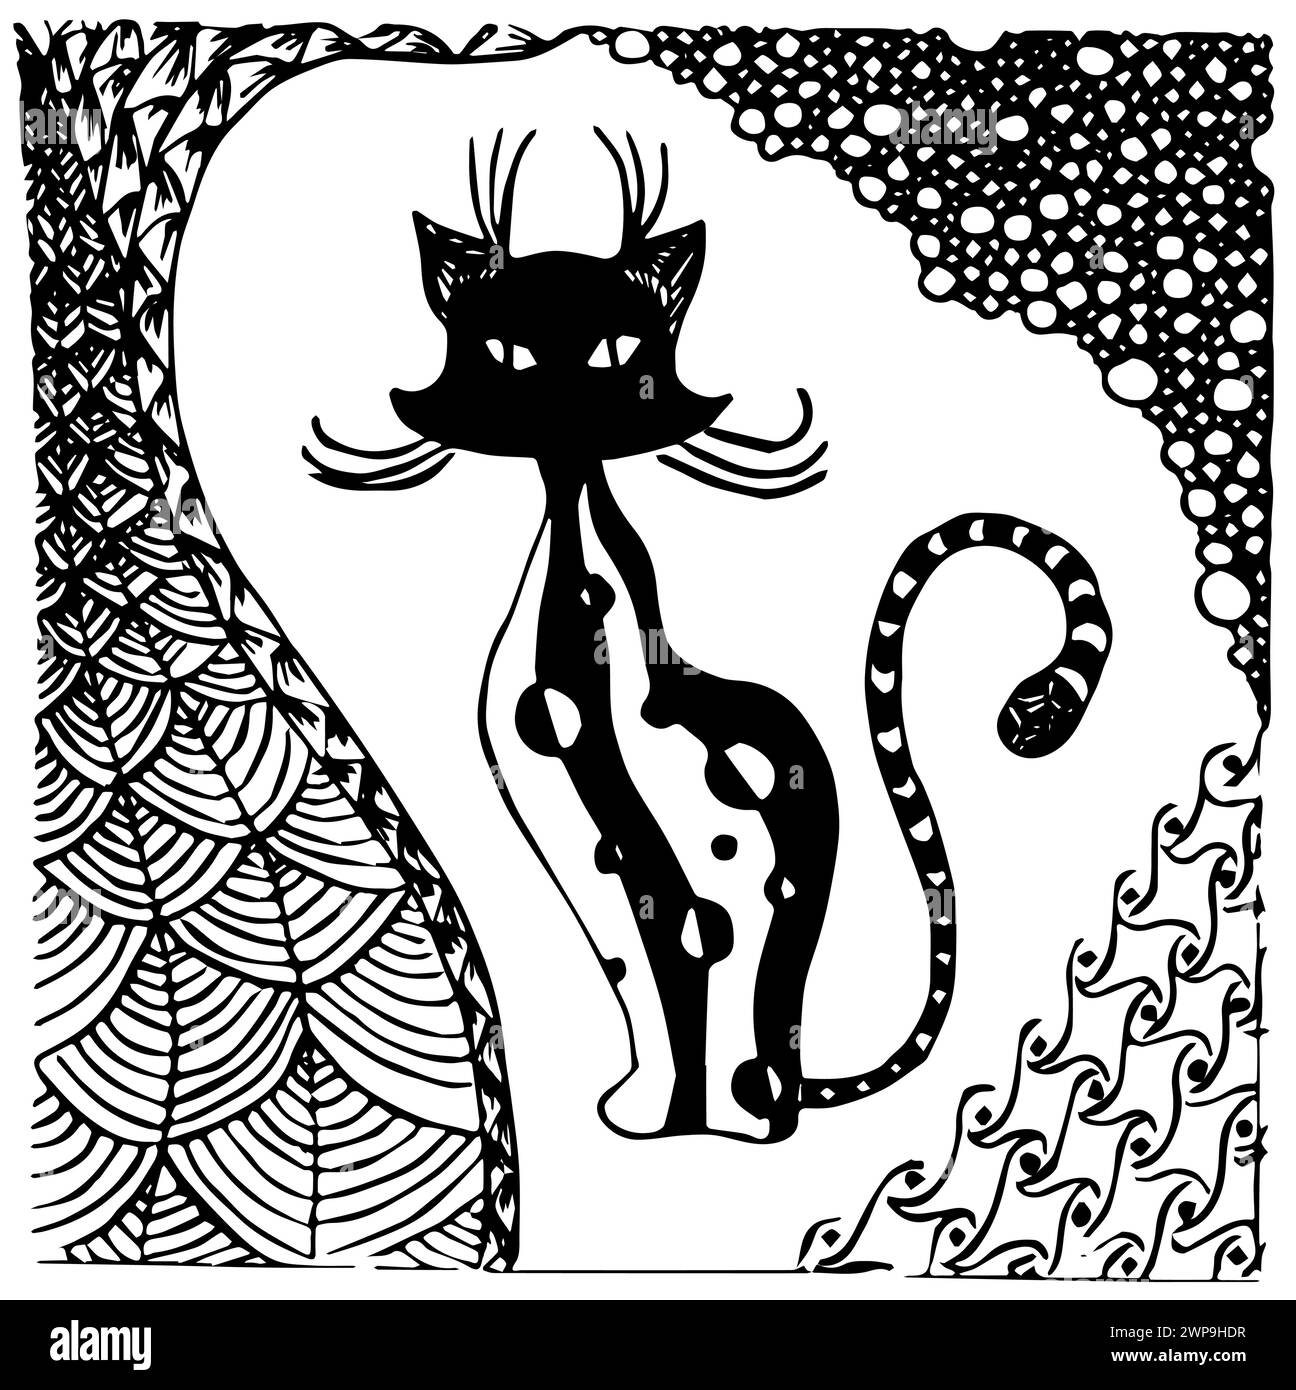 Illustration vectorielle avec chat abstrait noir et blanc. Le chat est dans un cadre assemblé à partir de motifs abstraits. Zen-commandes Illustration de Vecteur